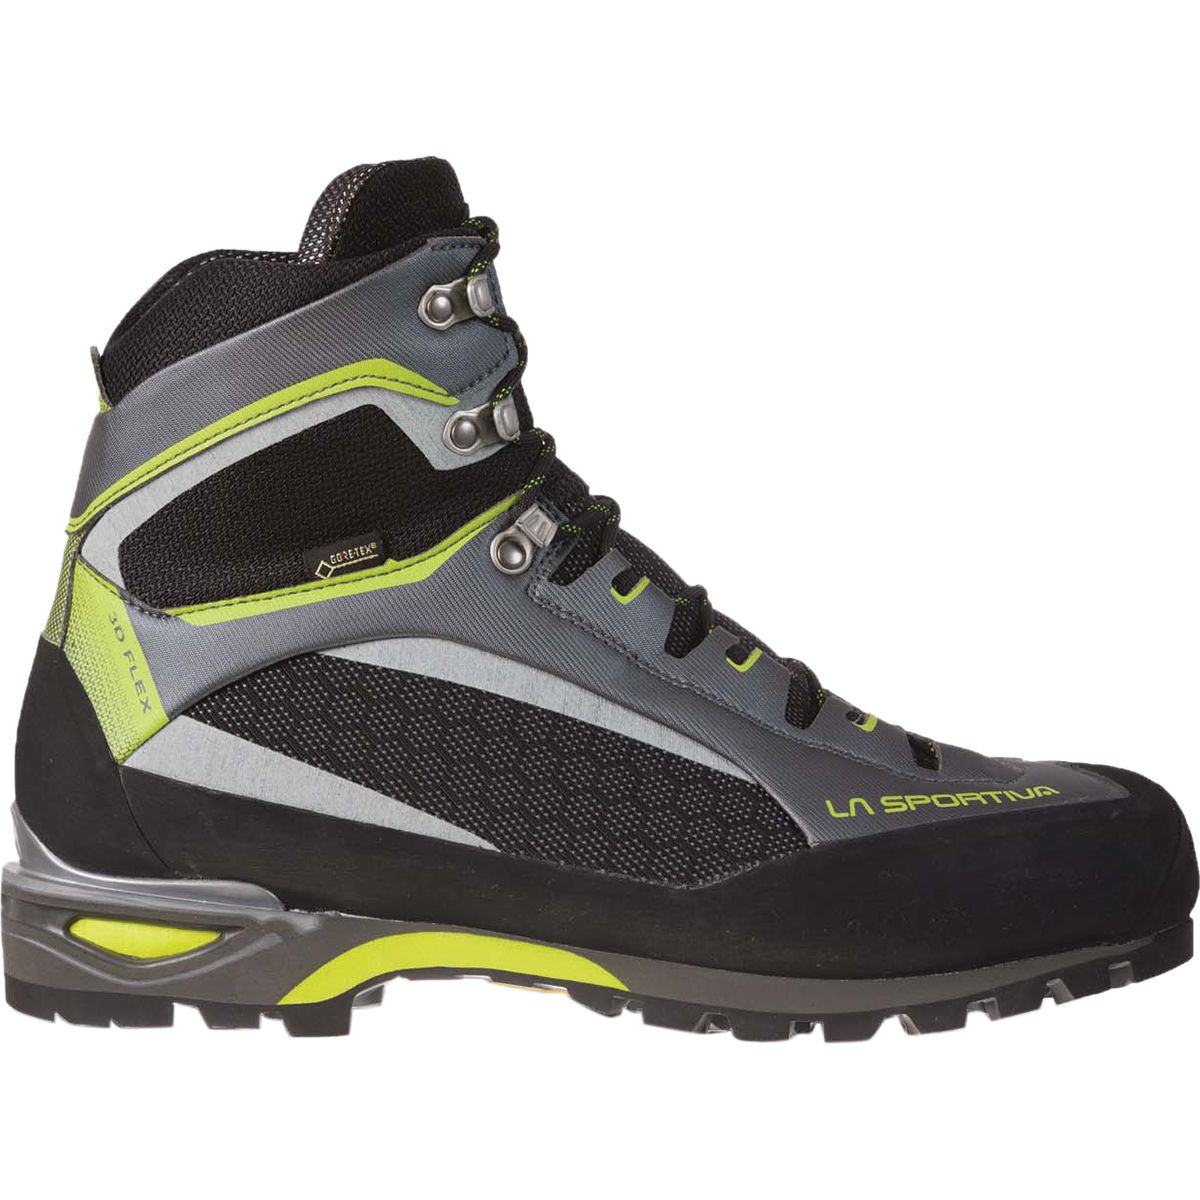 ultralight mountaineering boots